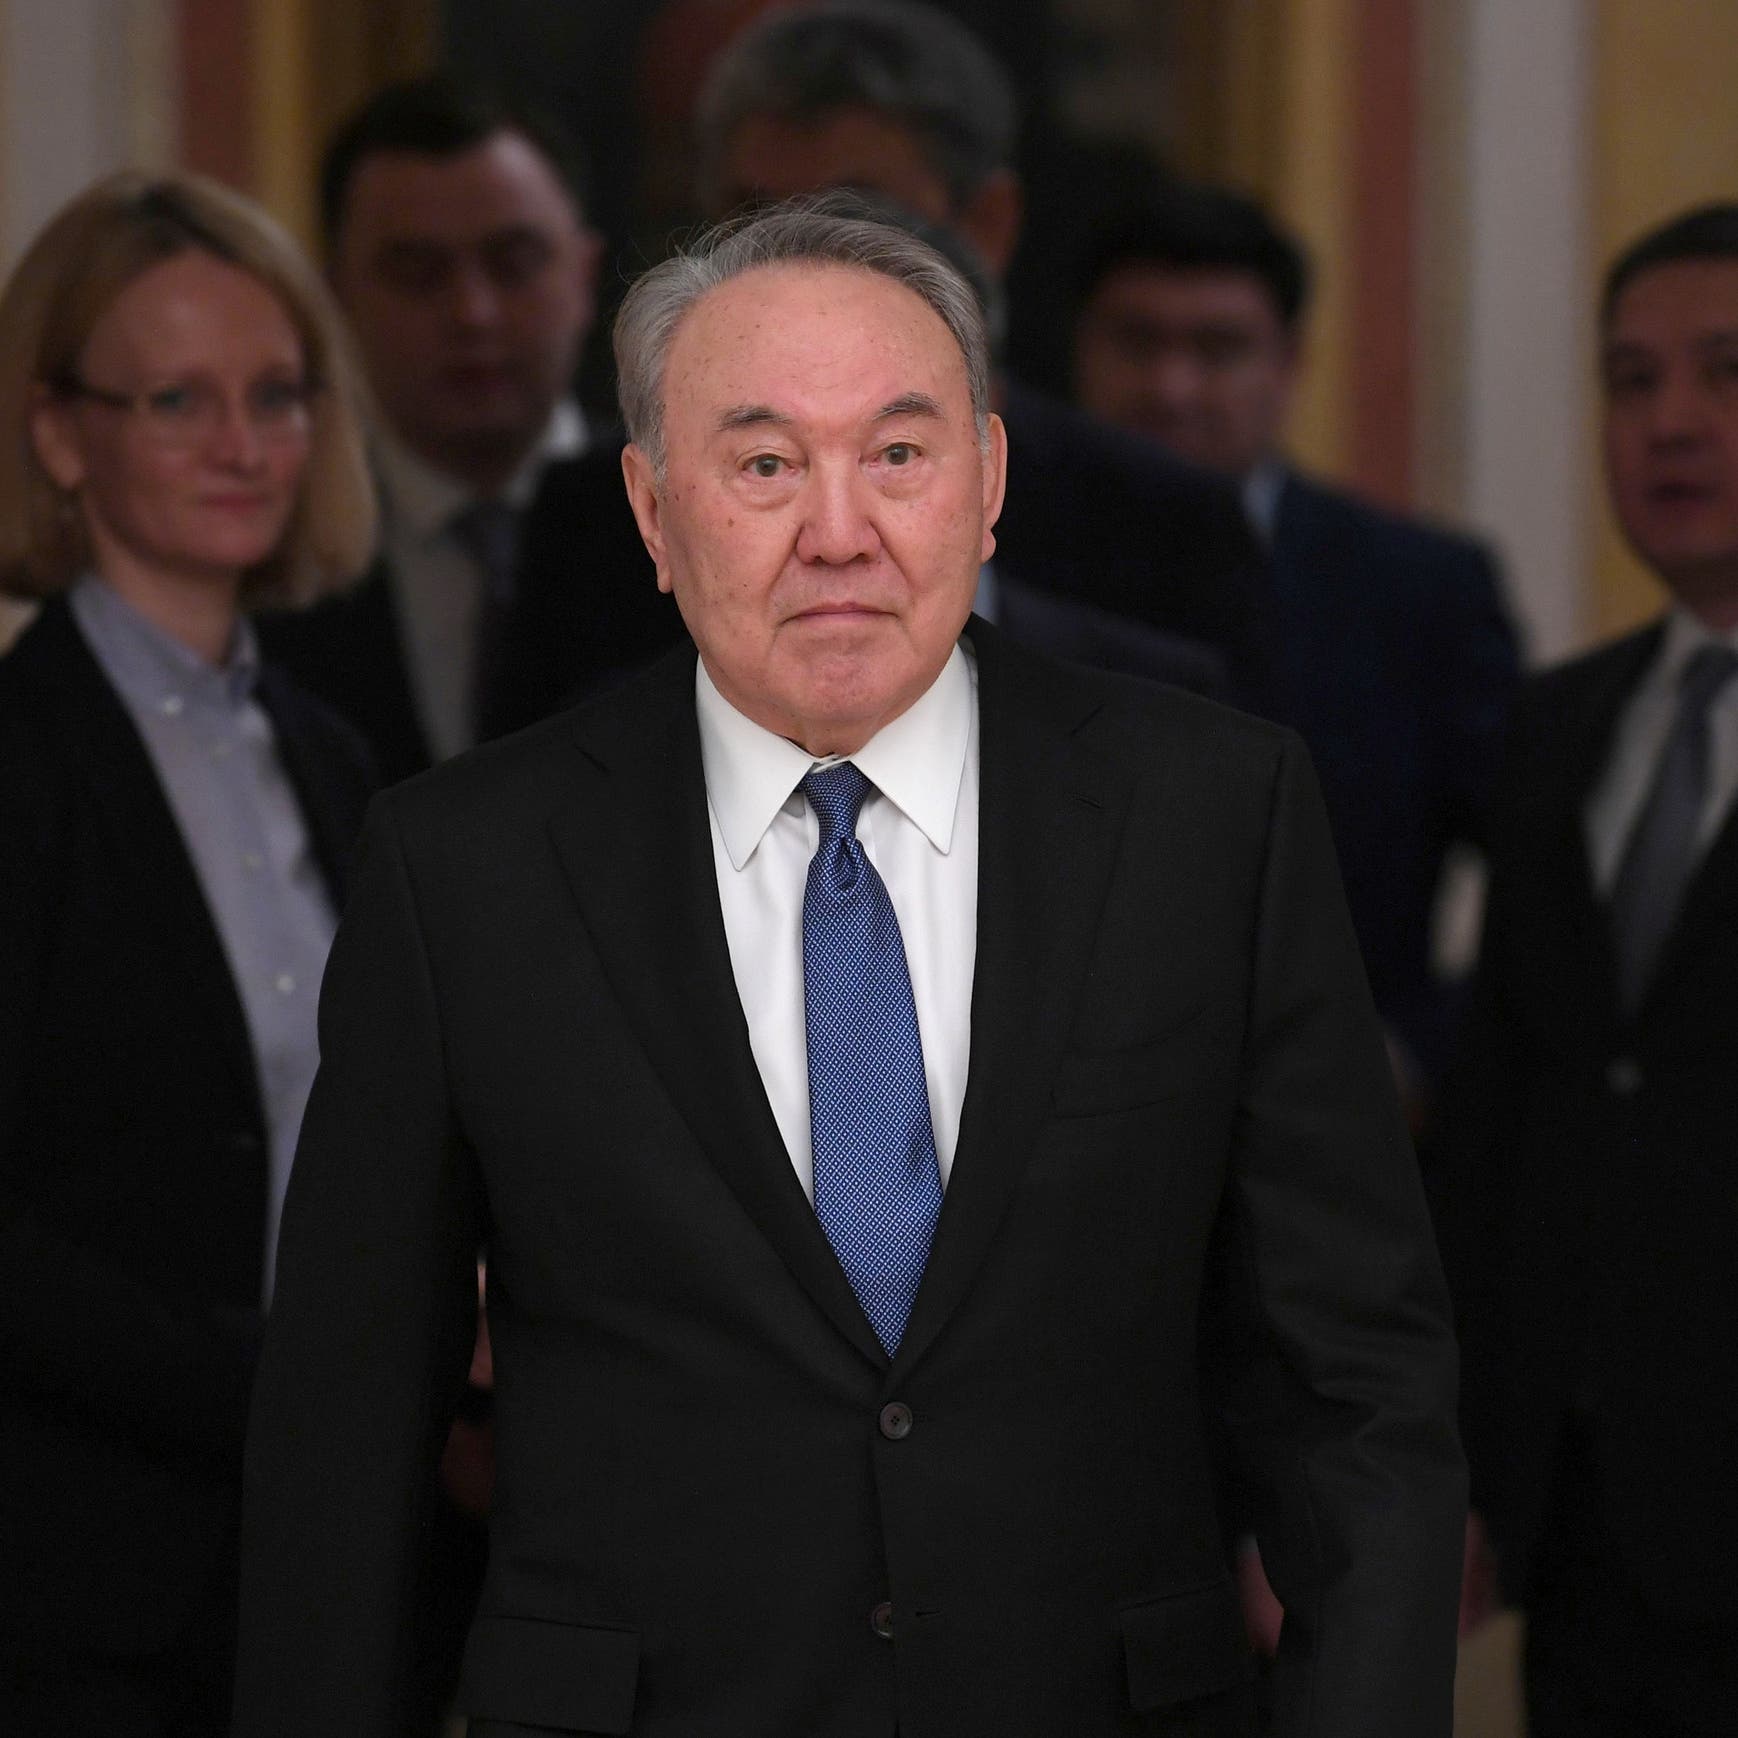 كازاخستان الغاضبة تهاجم الرئيس السابق نزارباييف: "ارحل أيها العجوز"